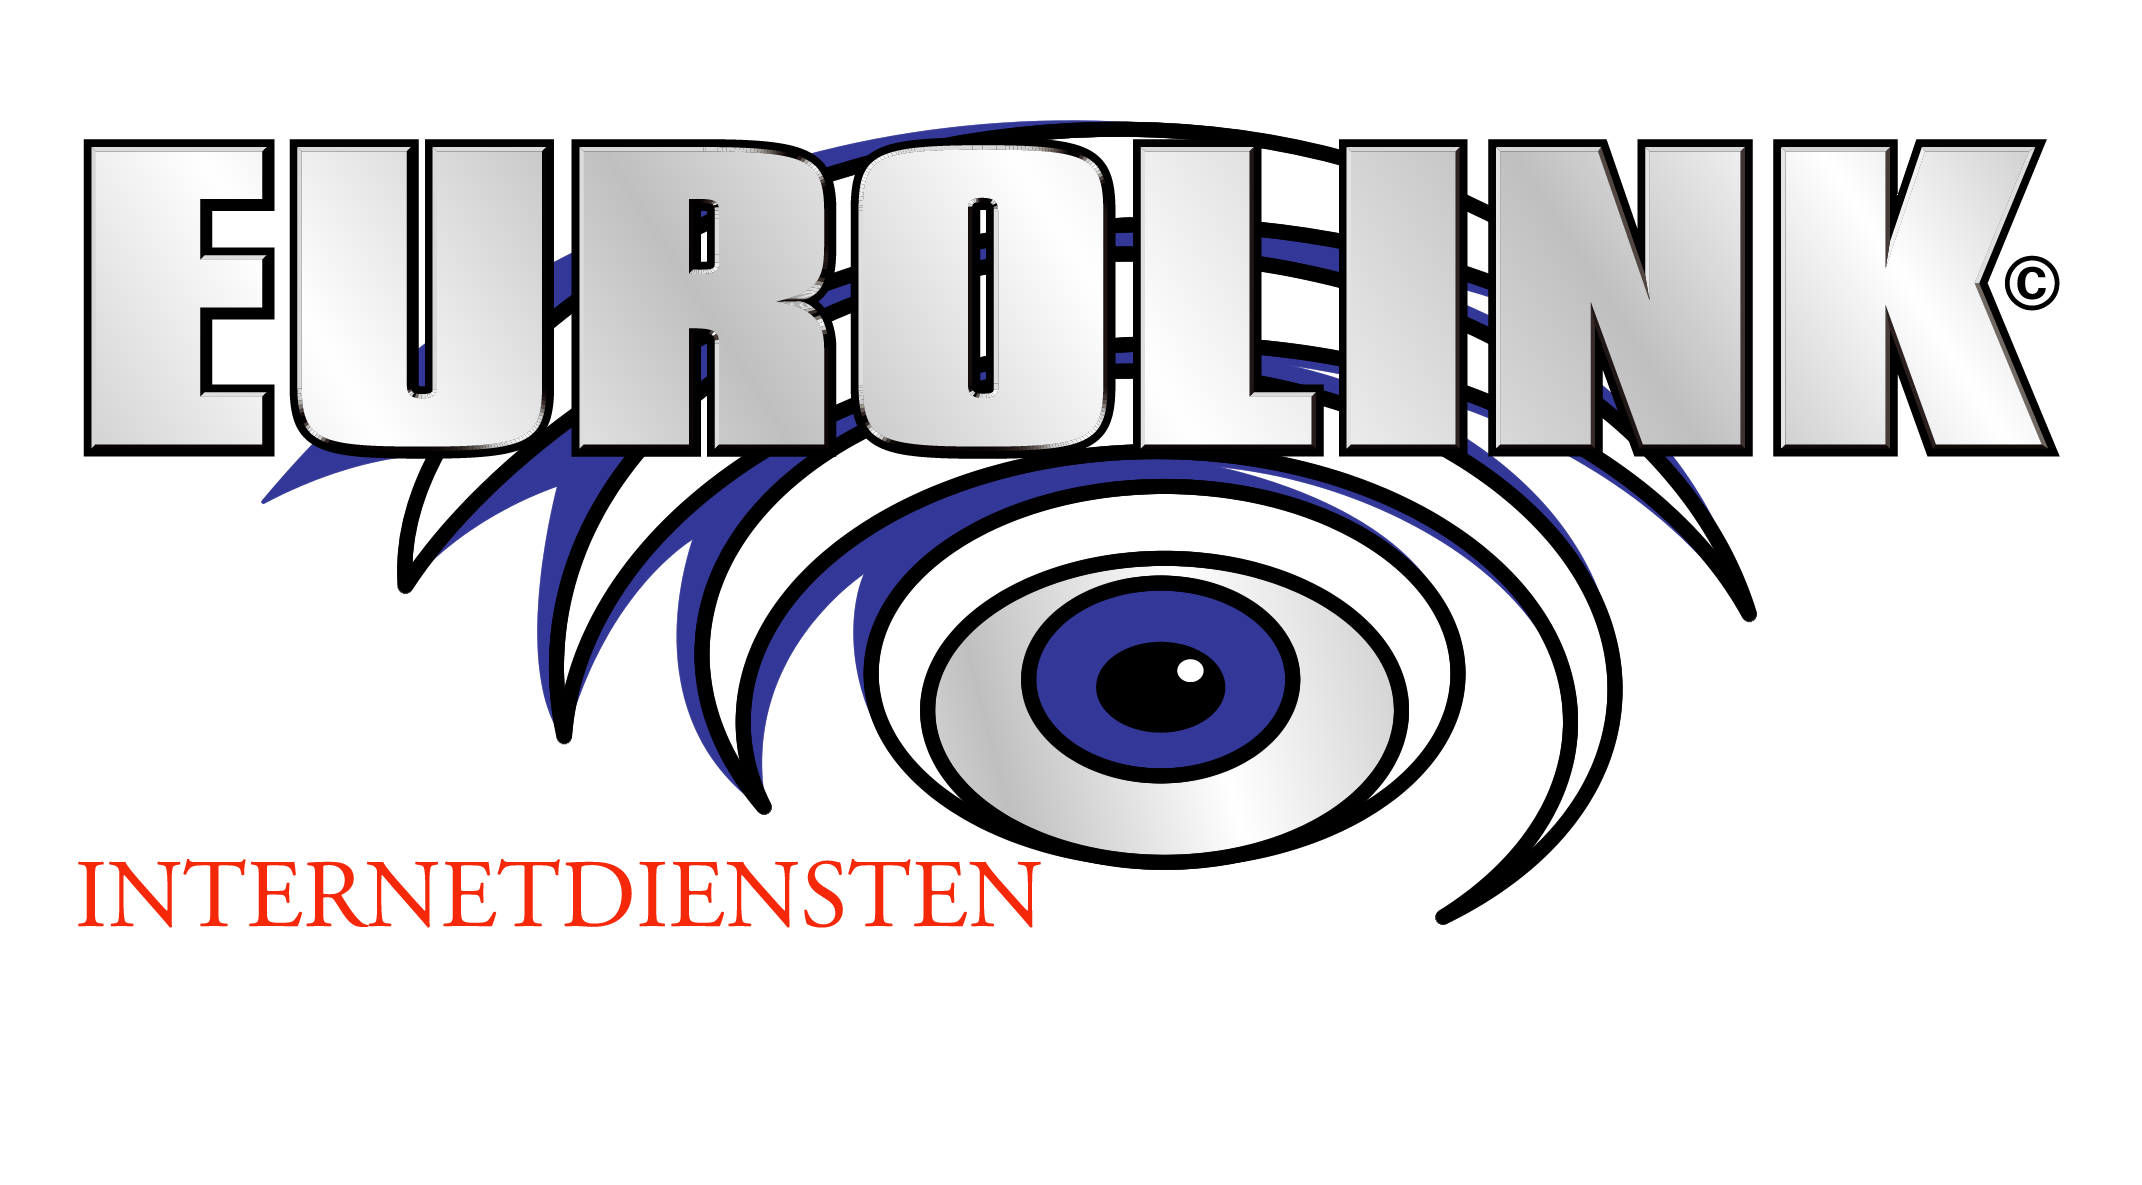 Eurolink Internet Diensten Logo photo - 1